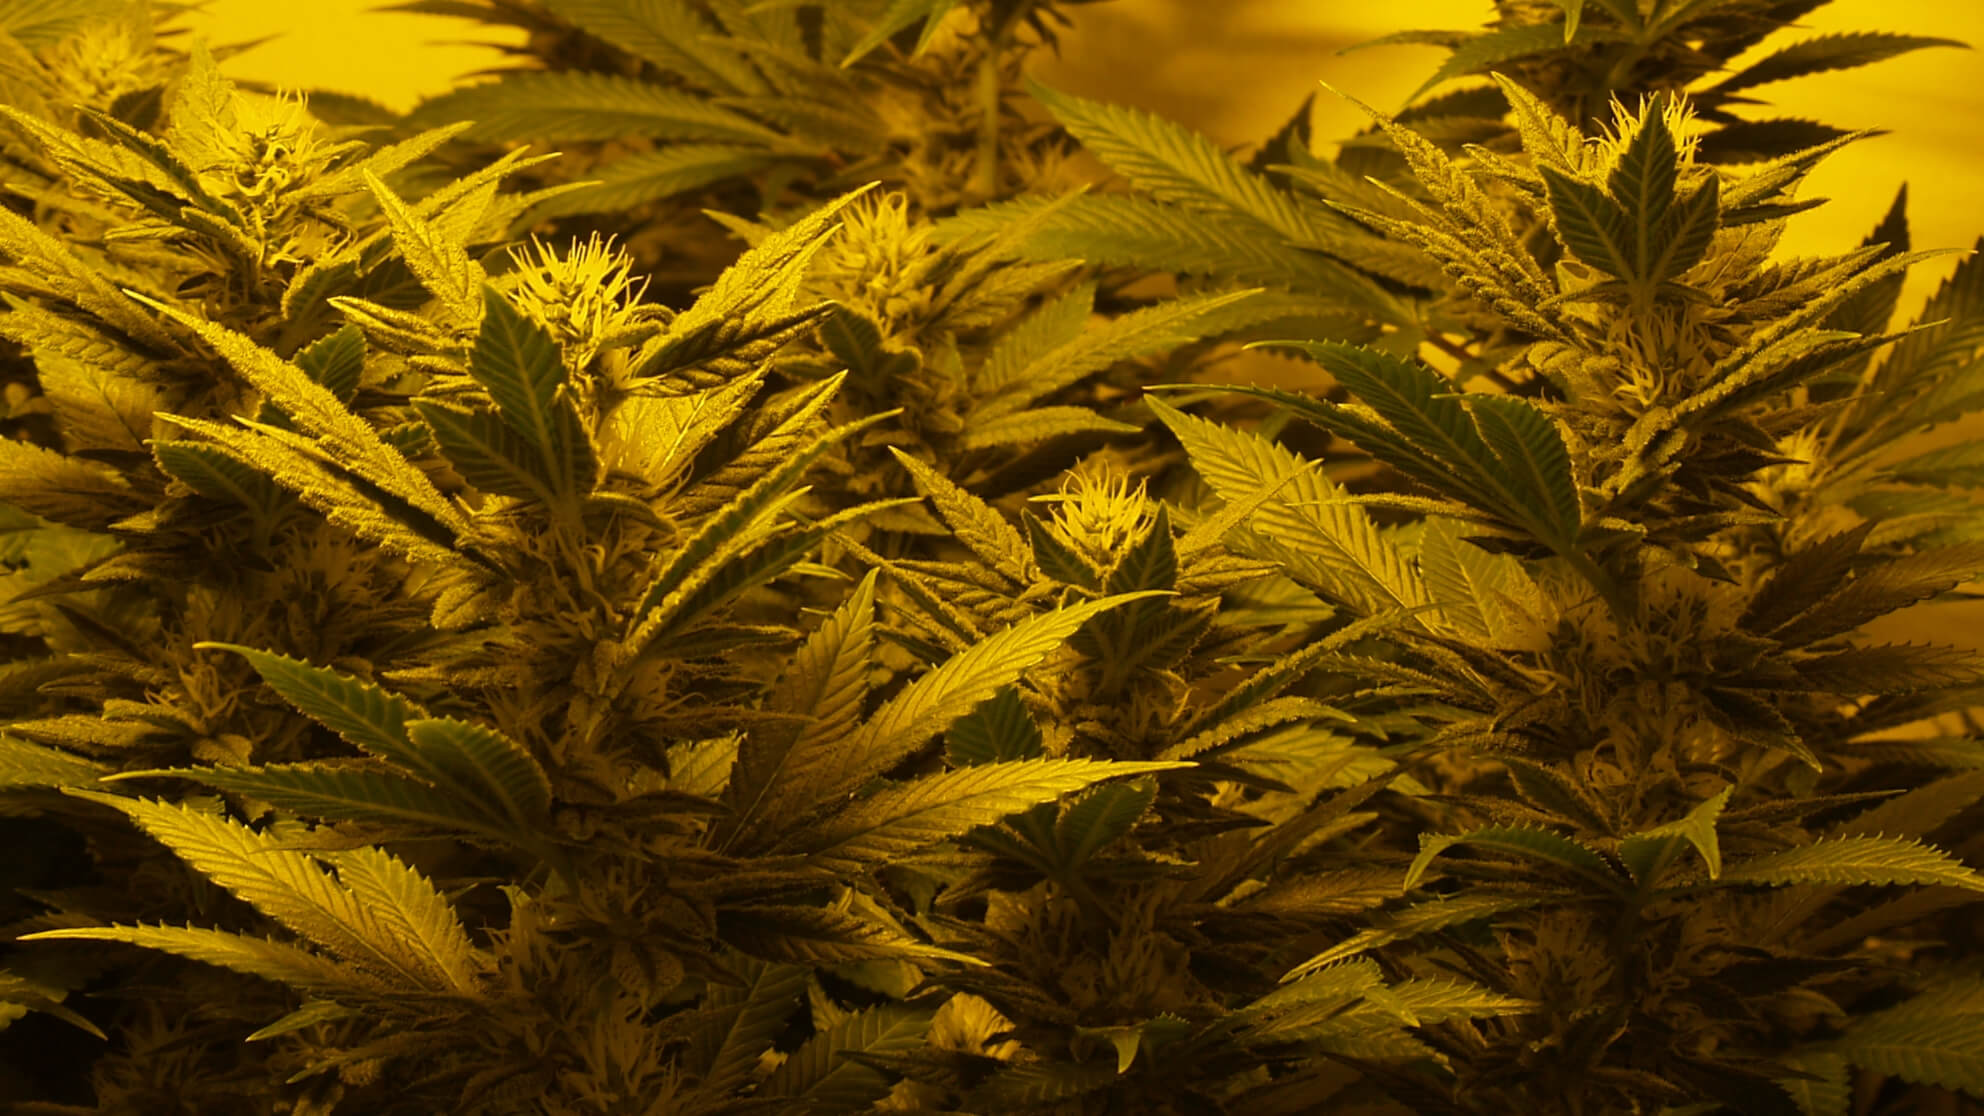 Eigene Marihuanapflanzen, um beim Drogenkonsum unabhängig zu bleiben? Nicht erwischen lassen!